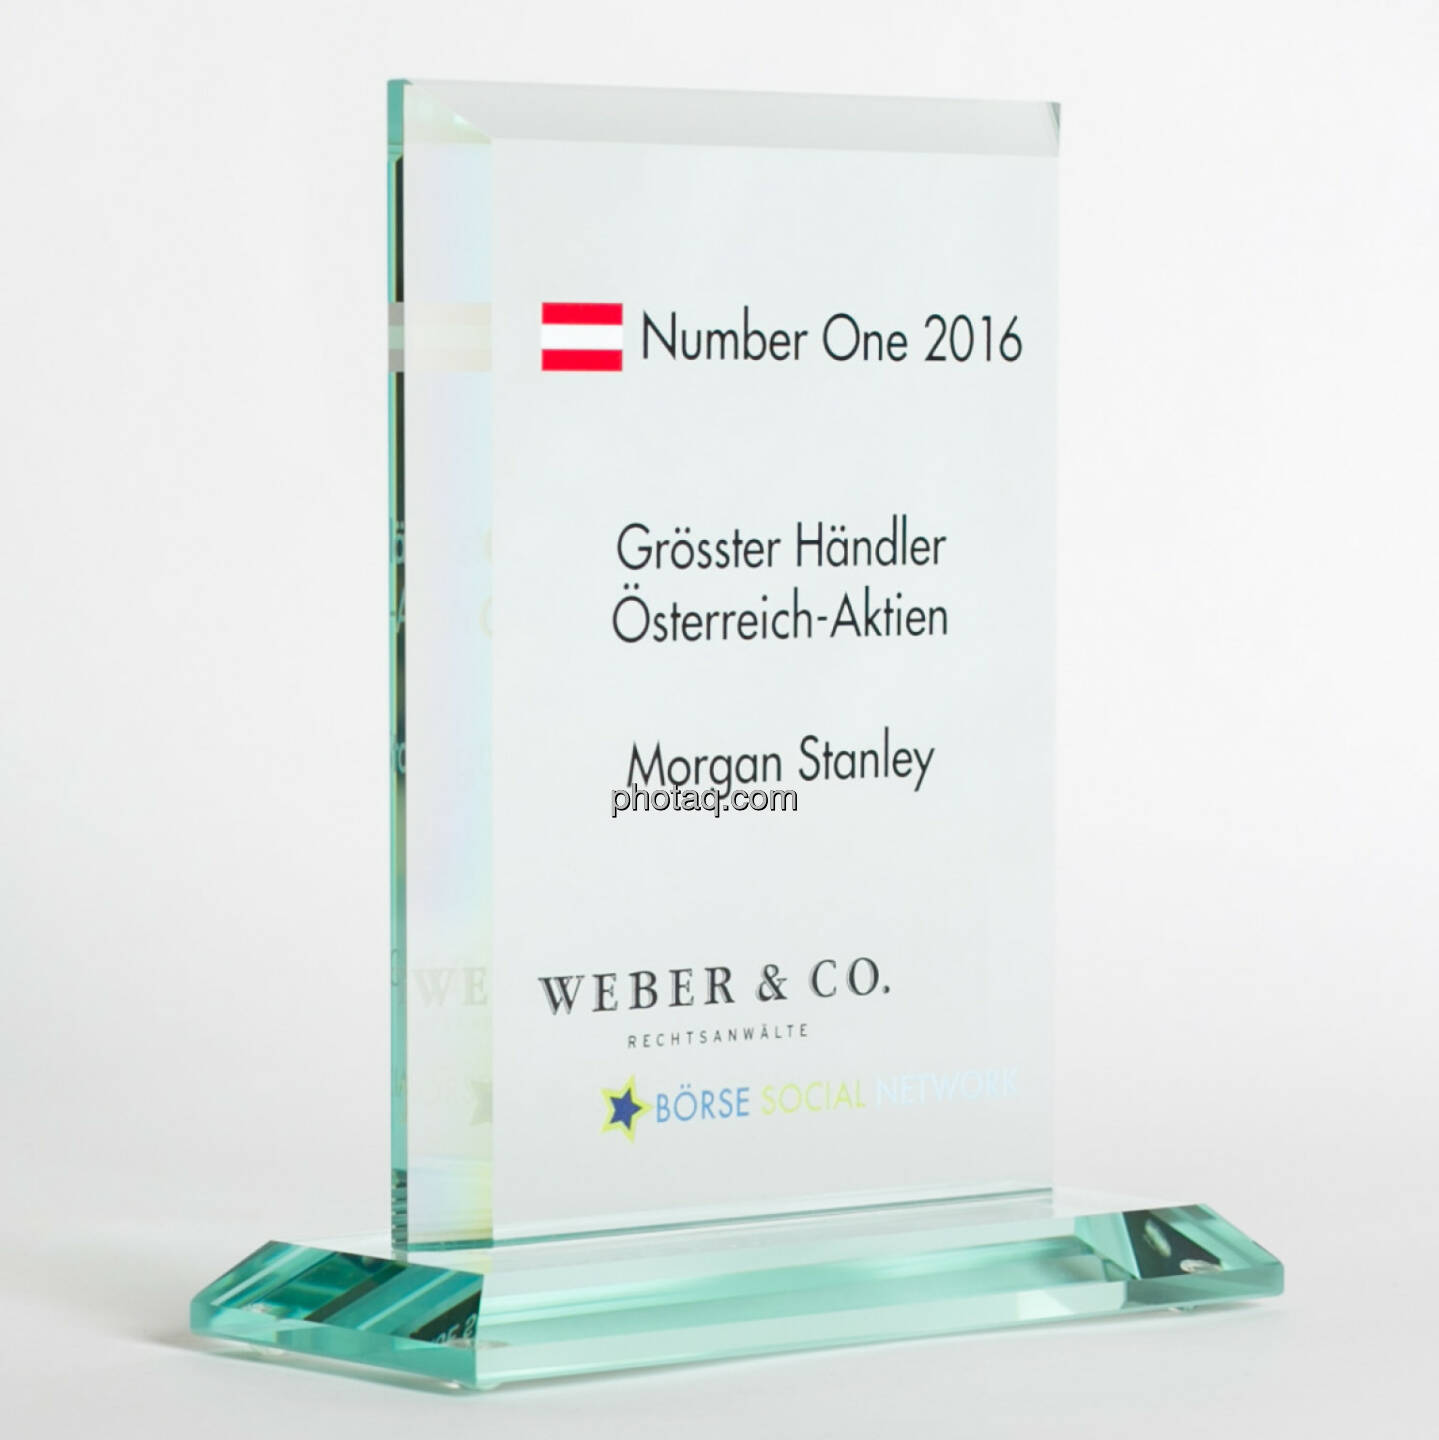 Number One Awards 2016 - Grösster Händler Österreich-Aktien Morgan Stanley